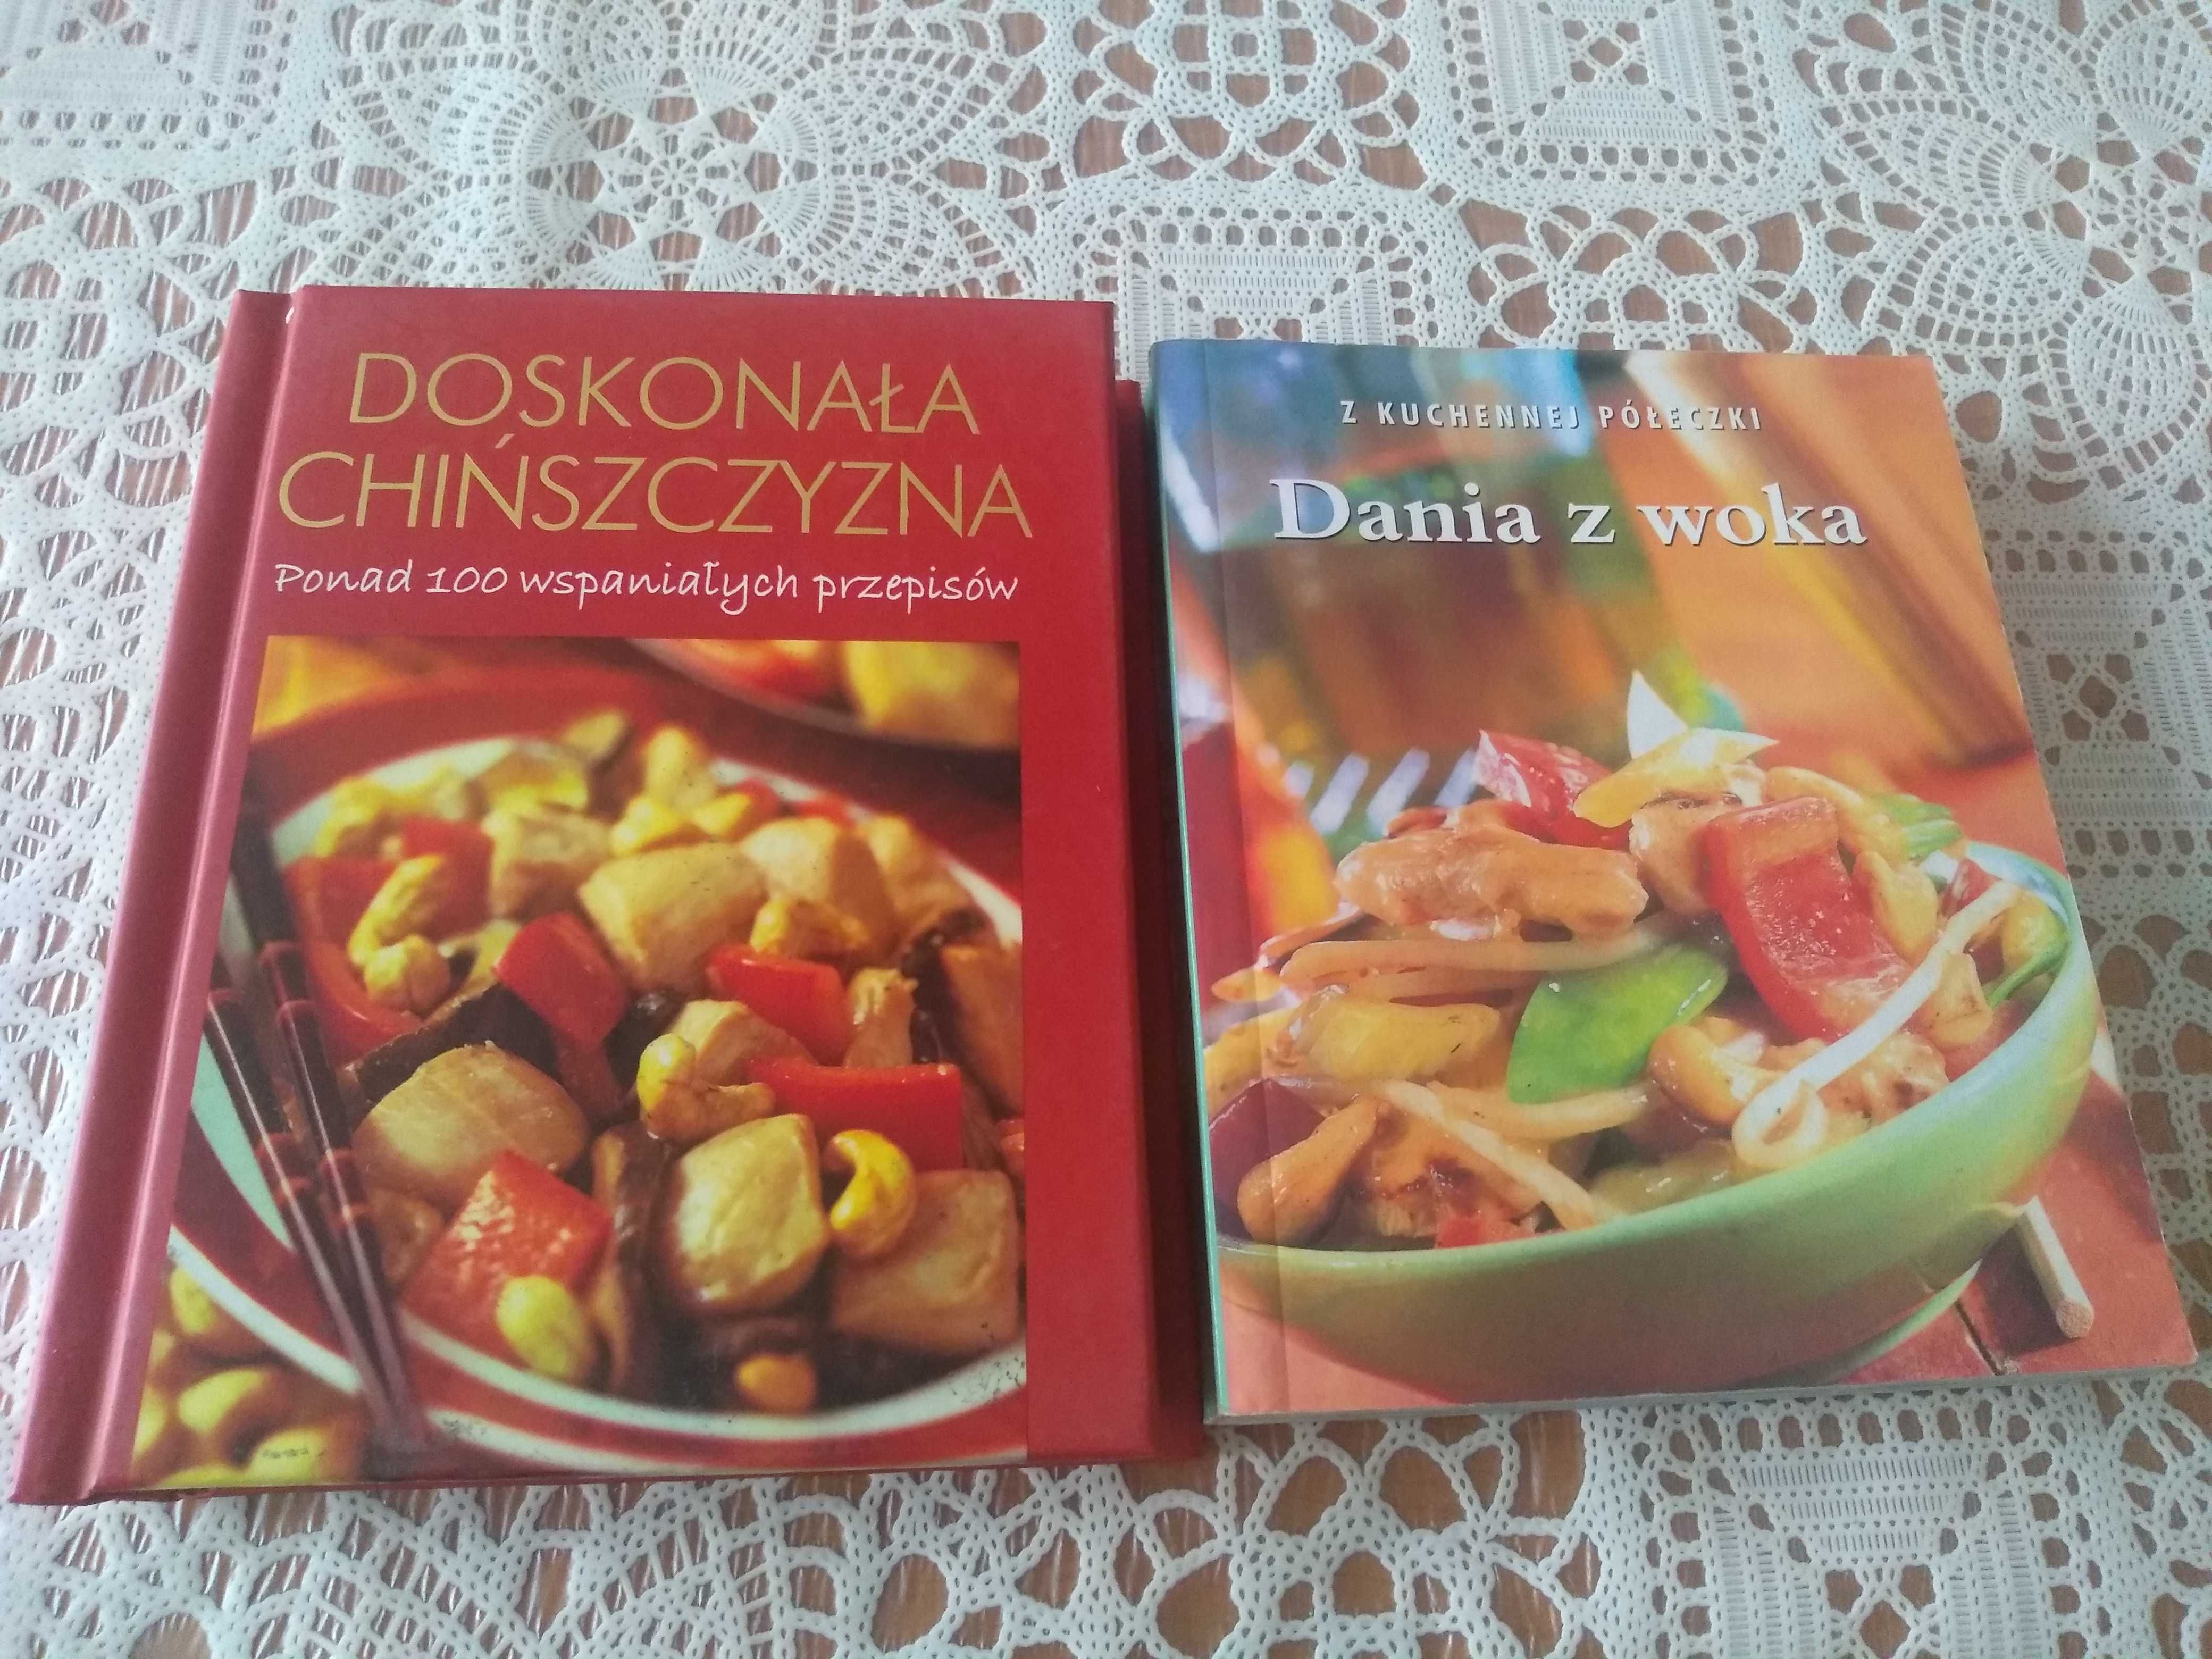 Zestaw książek z przepisami Doskonała chińszczyzna i Dania z woka